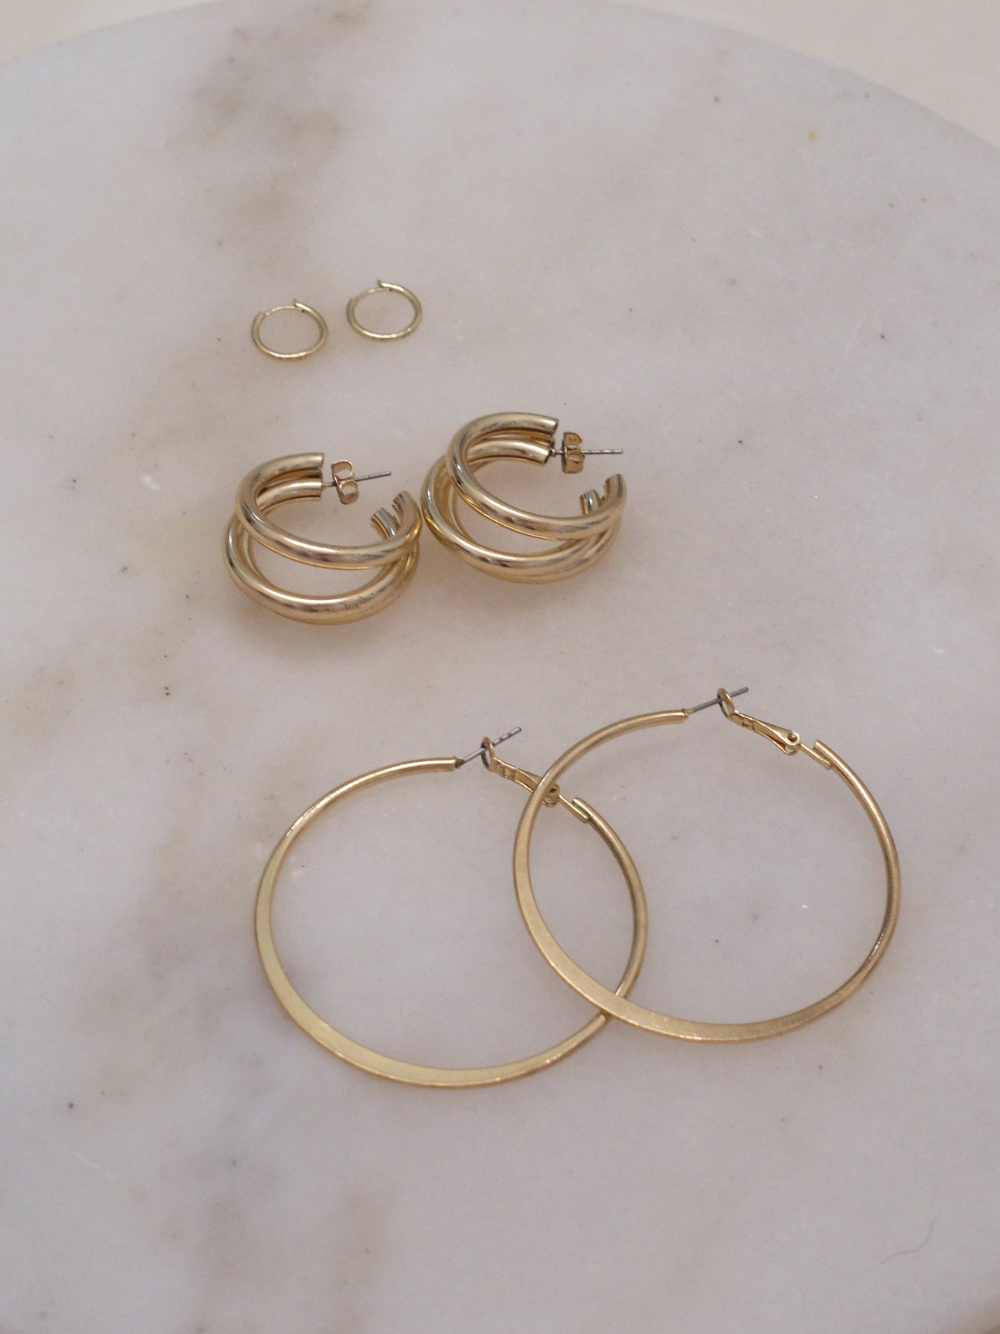 gold hoop earrings on marble